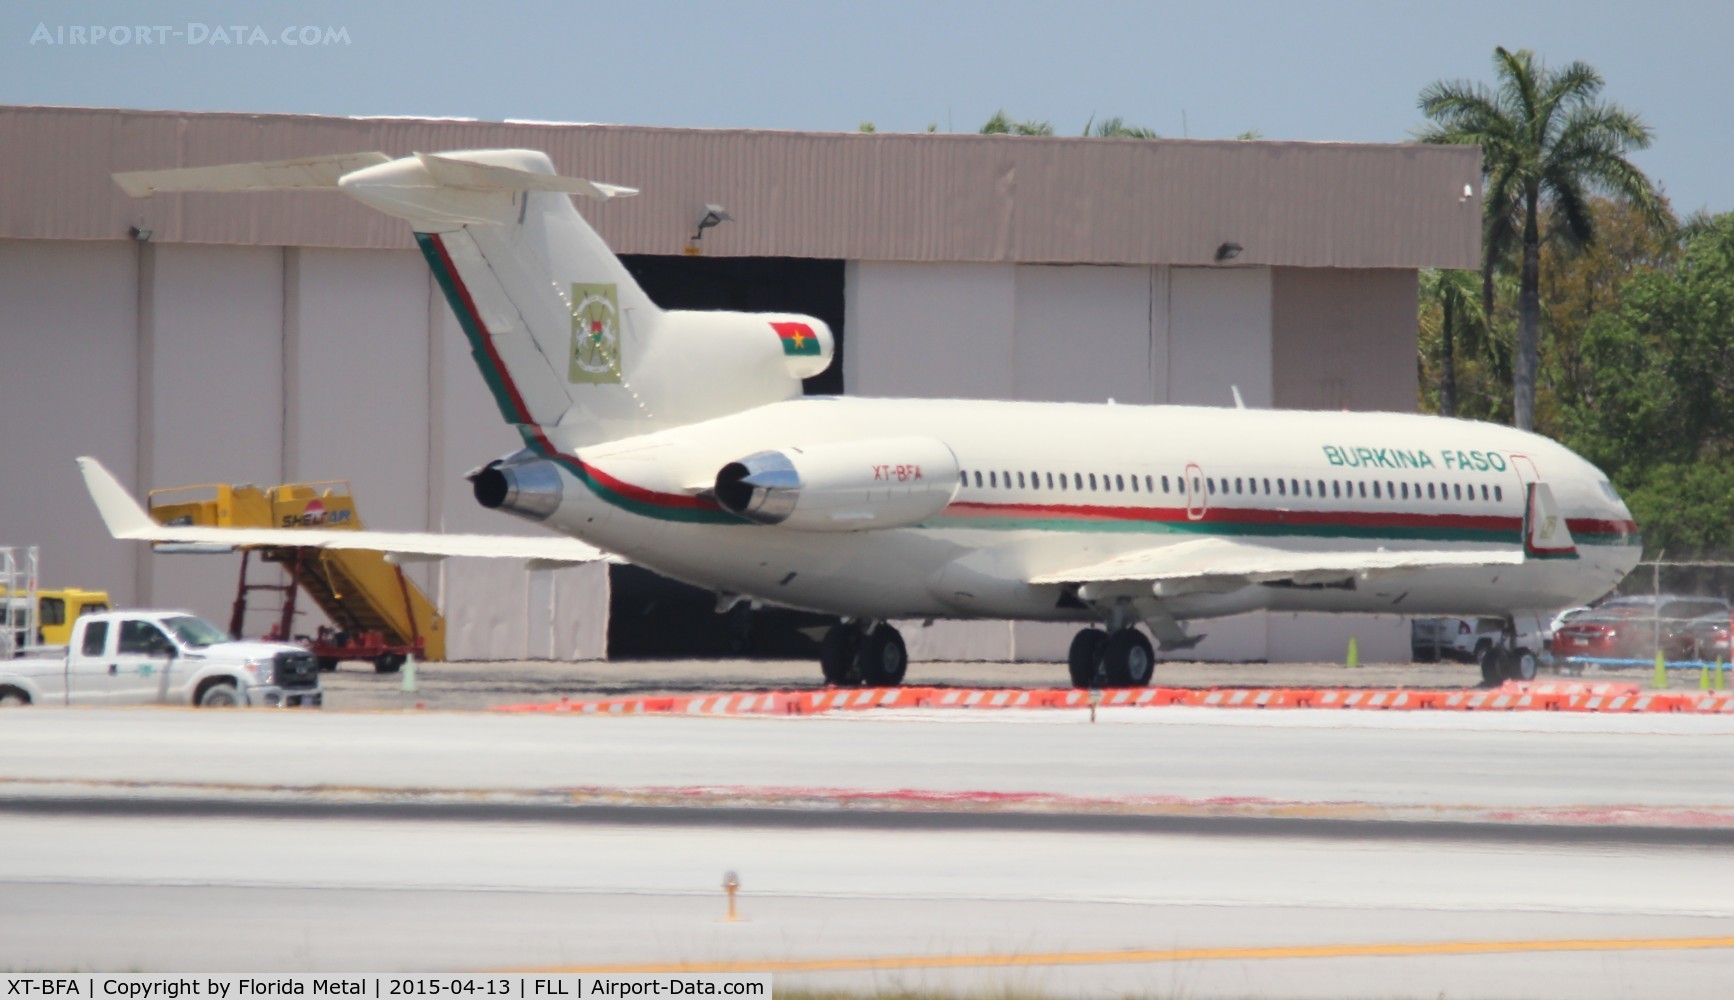 XT-BFA, 1981 Boeing 727-282 C/N 22430, Burkina Faso Government 727-200